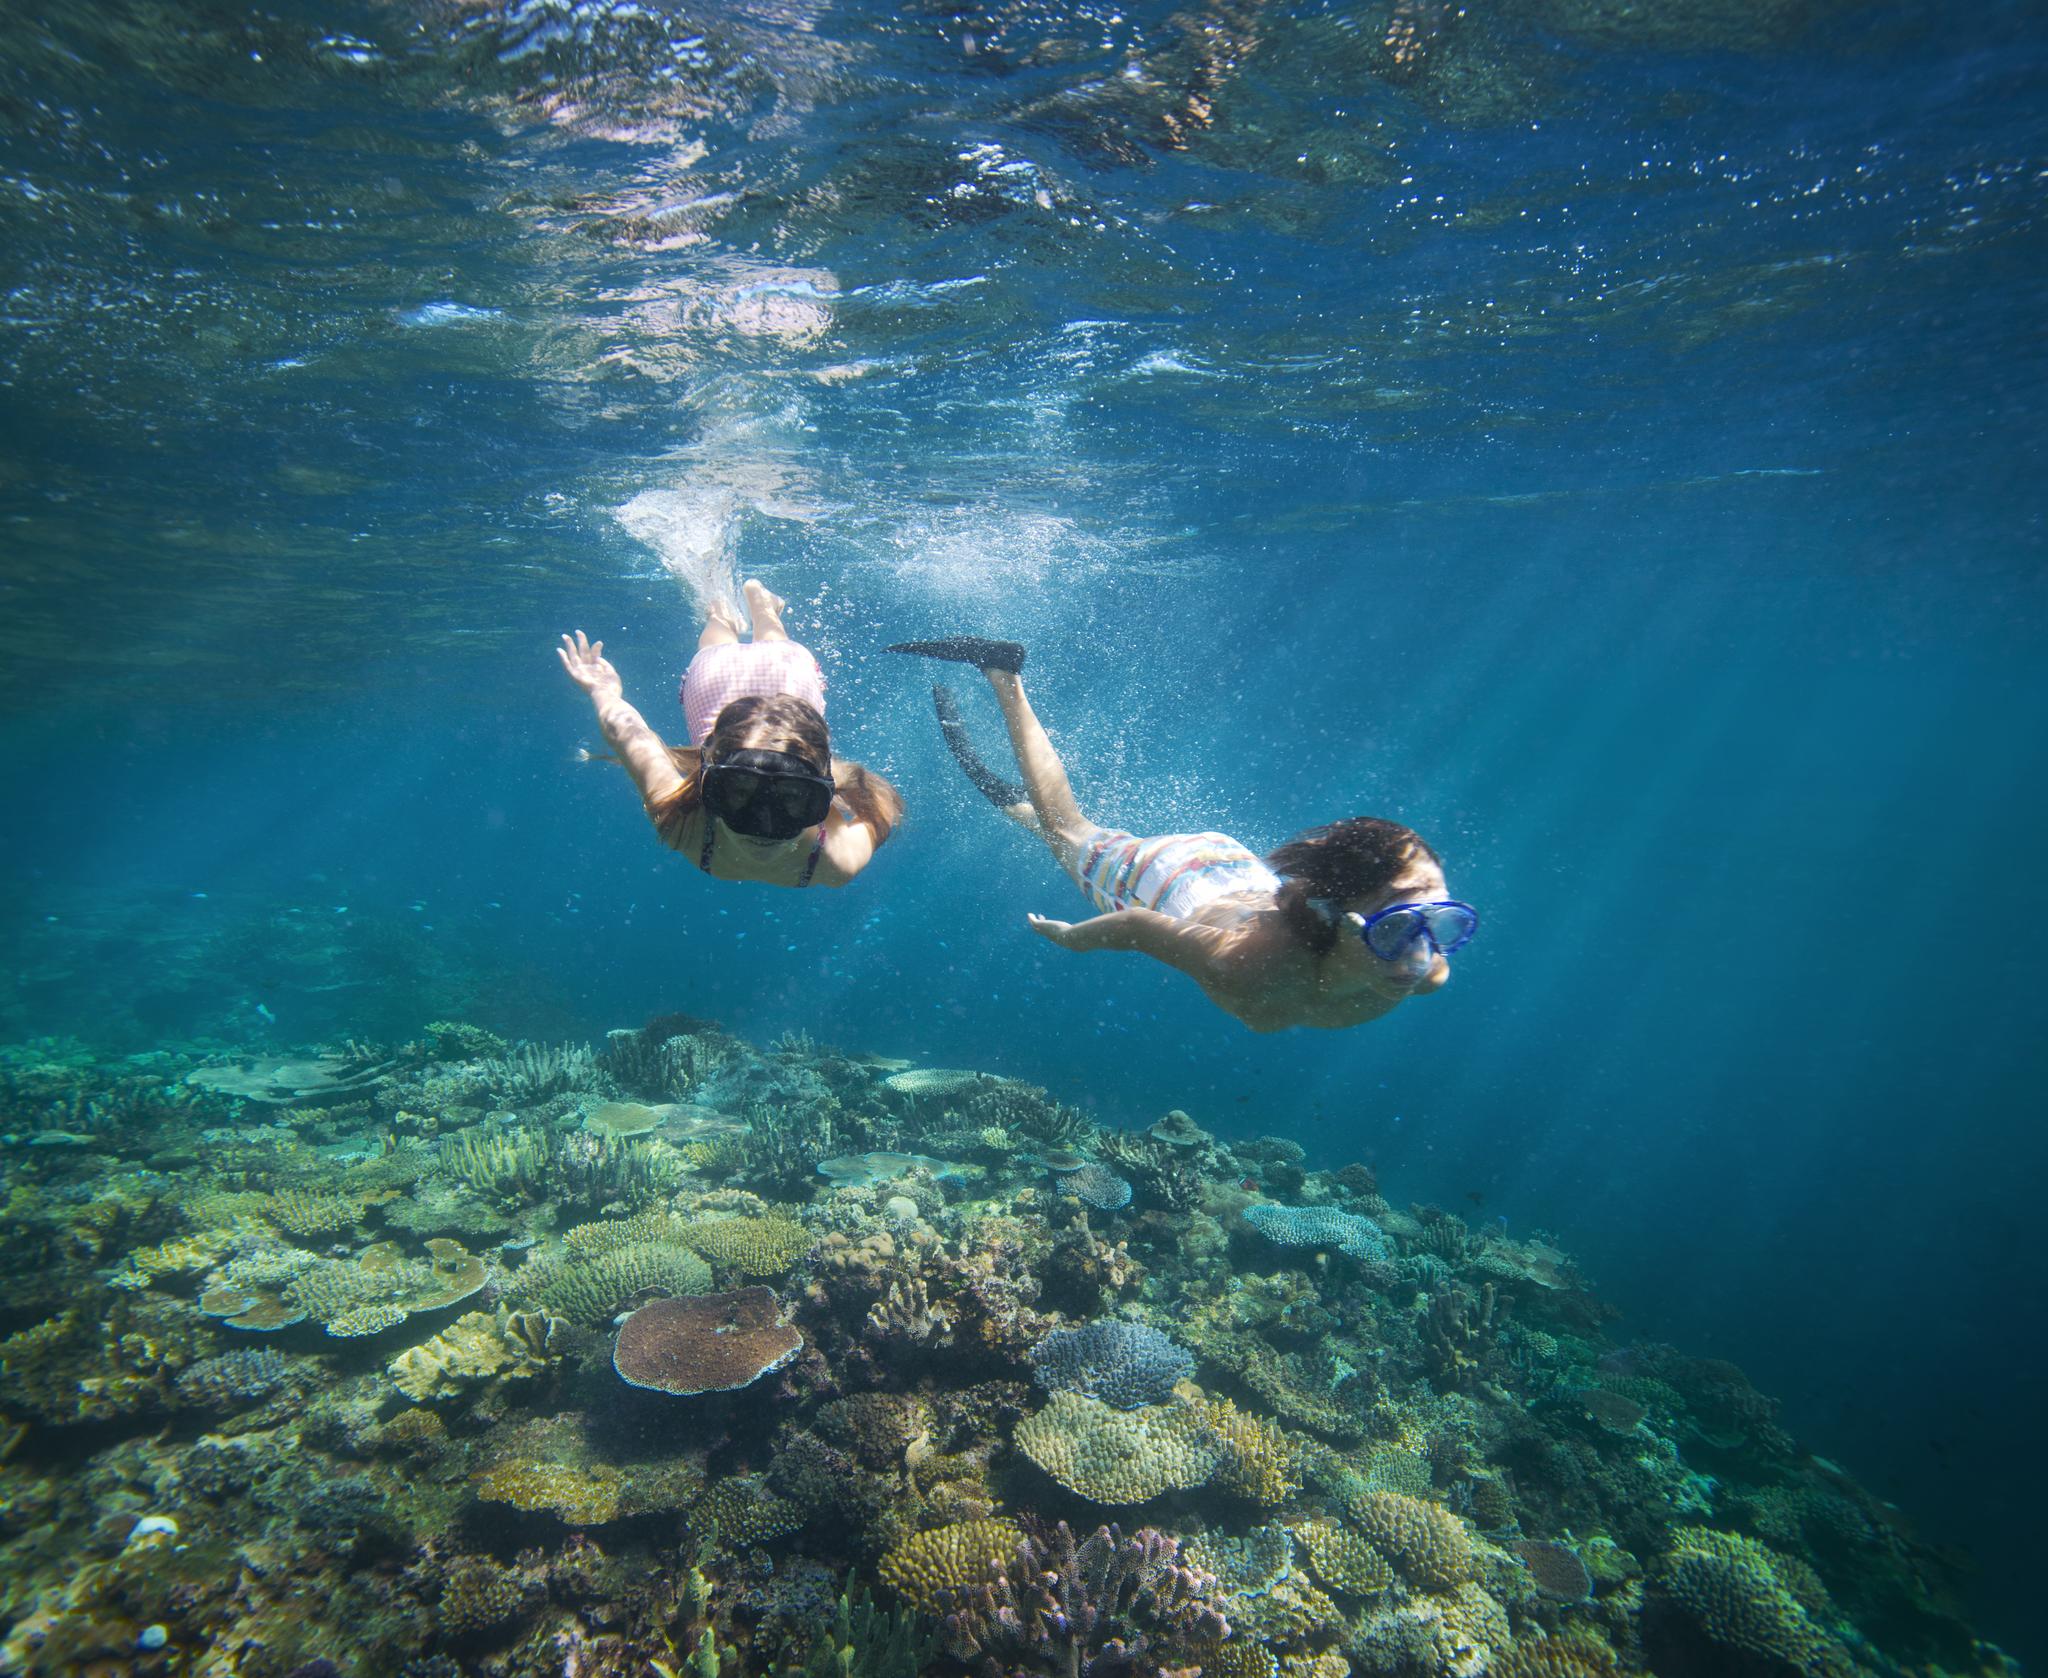 Fijis undervattenliv är fullt av liv och färger